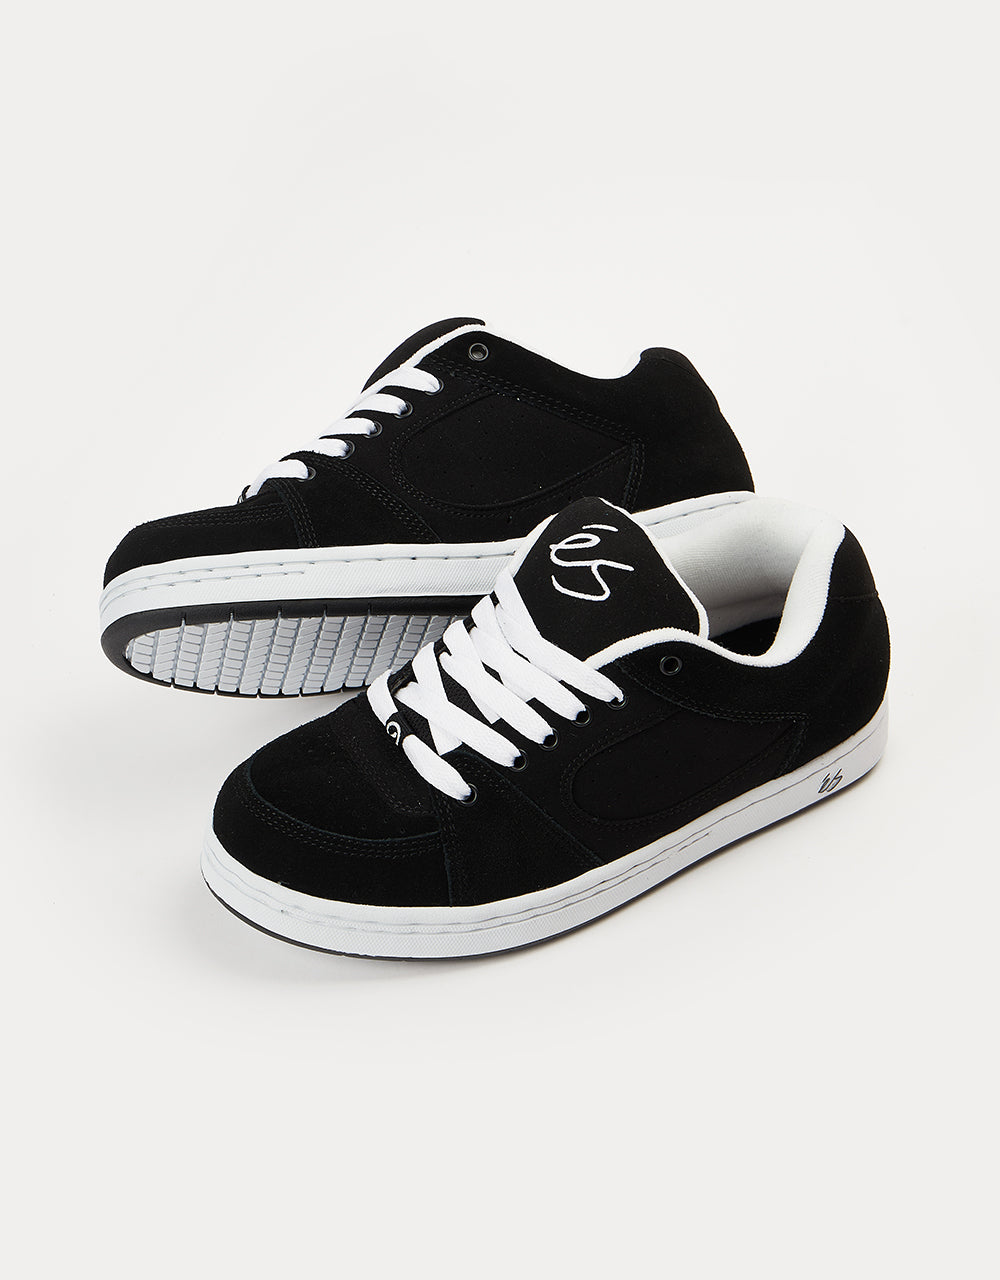 éS Accel OG Skate Shoes - Black/White/Black